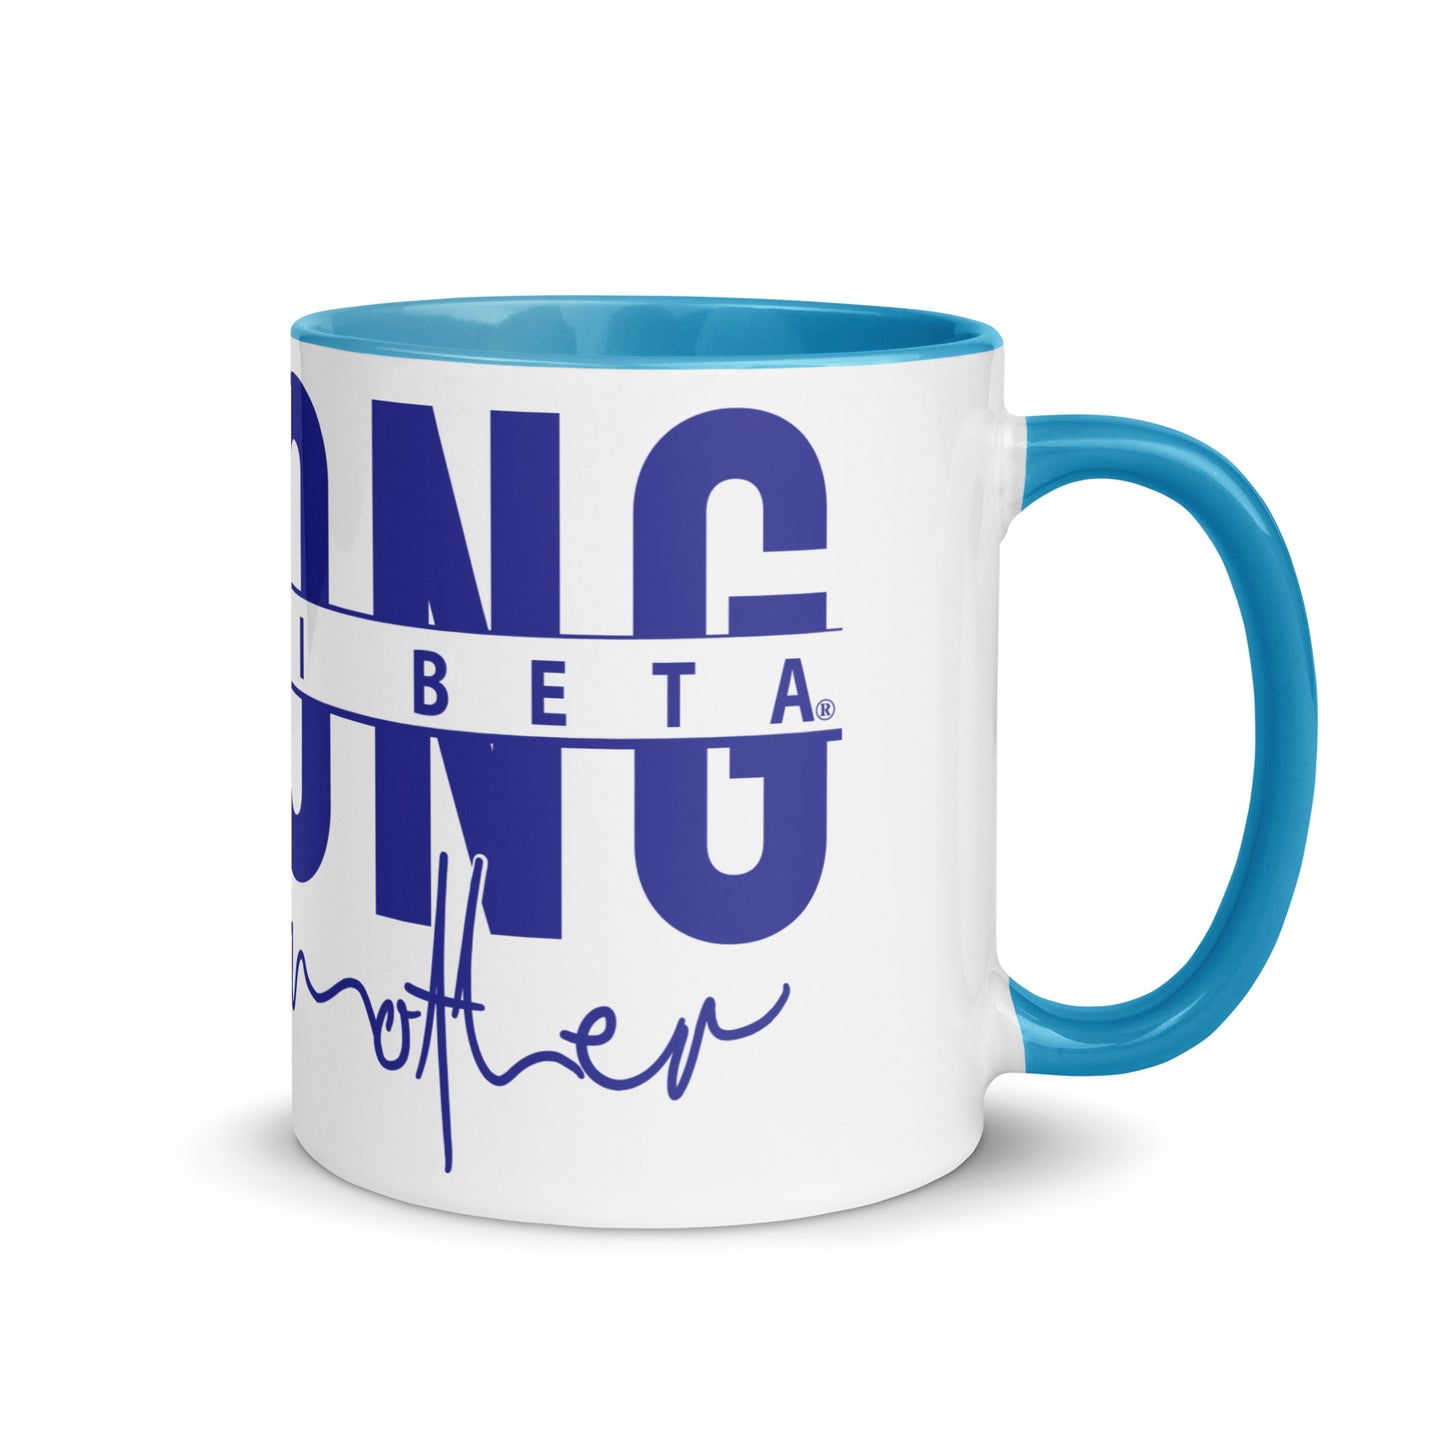 Zeta Phi Beta Strong Awesome Mom Mug with Color Inside